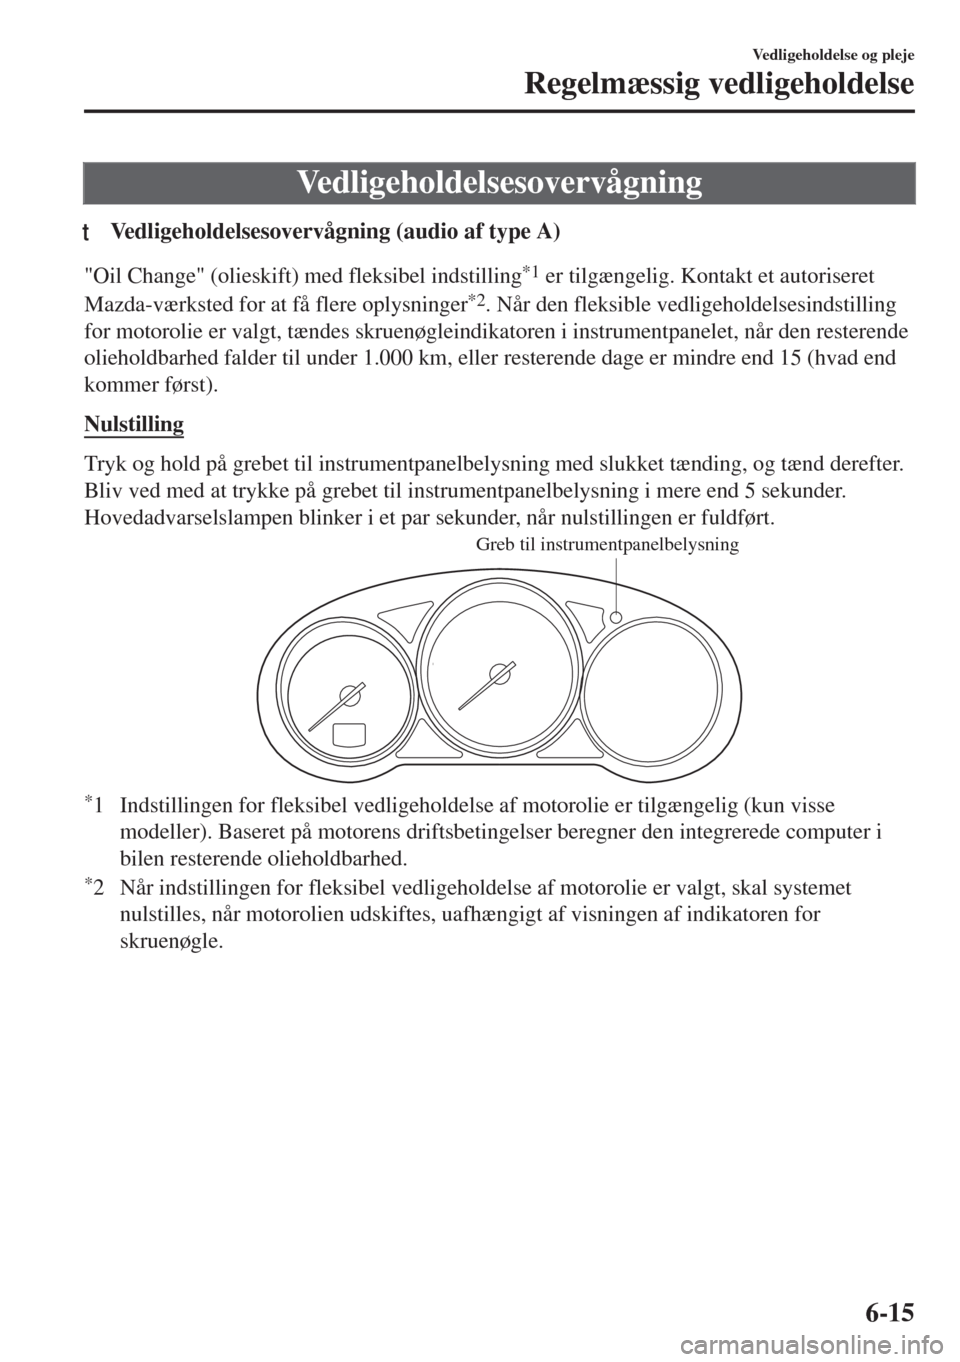 MAZDA MODEL 6 2018  Instruktionsbog (in Danish) Vedligeholdelsesovervågning
tVedligeholdelsesovervågning (audio af type A)
"Oil Change" (olieskift) med fleksibel indstilling*1 er tilgængelig. Kontakt et autoriseret
Mazda-værksted for at få fle